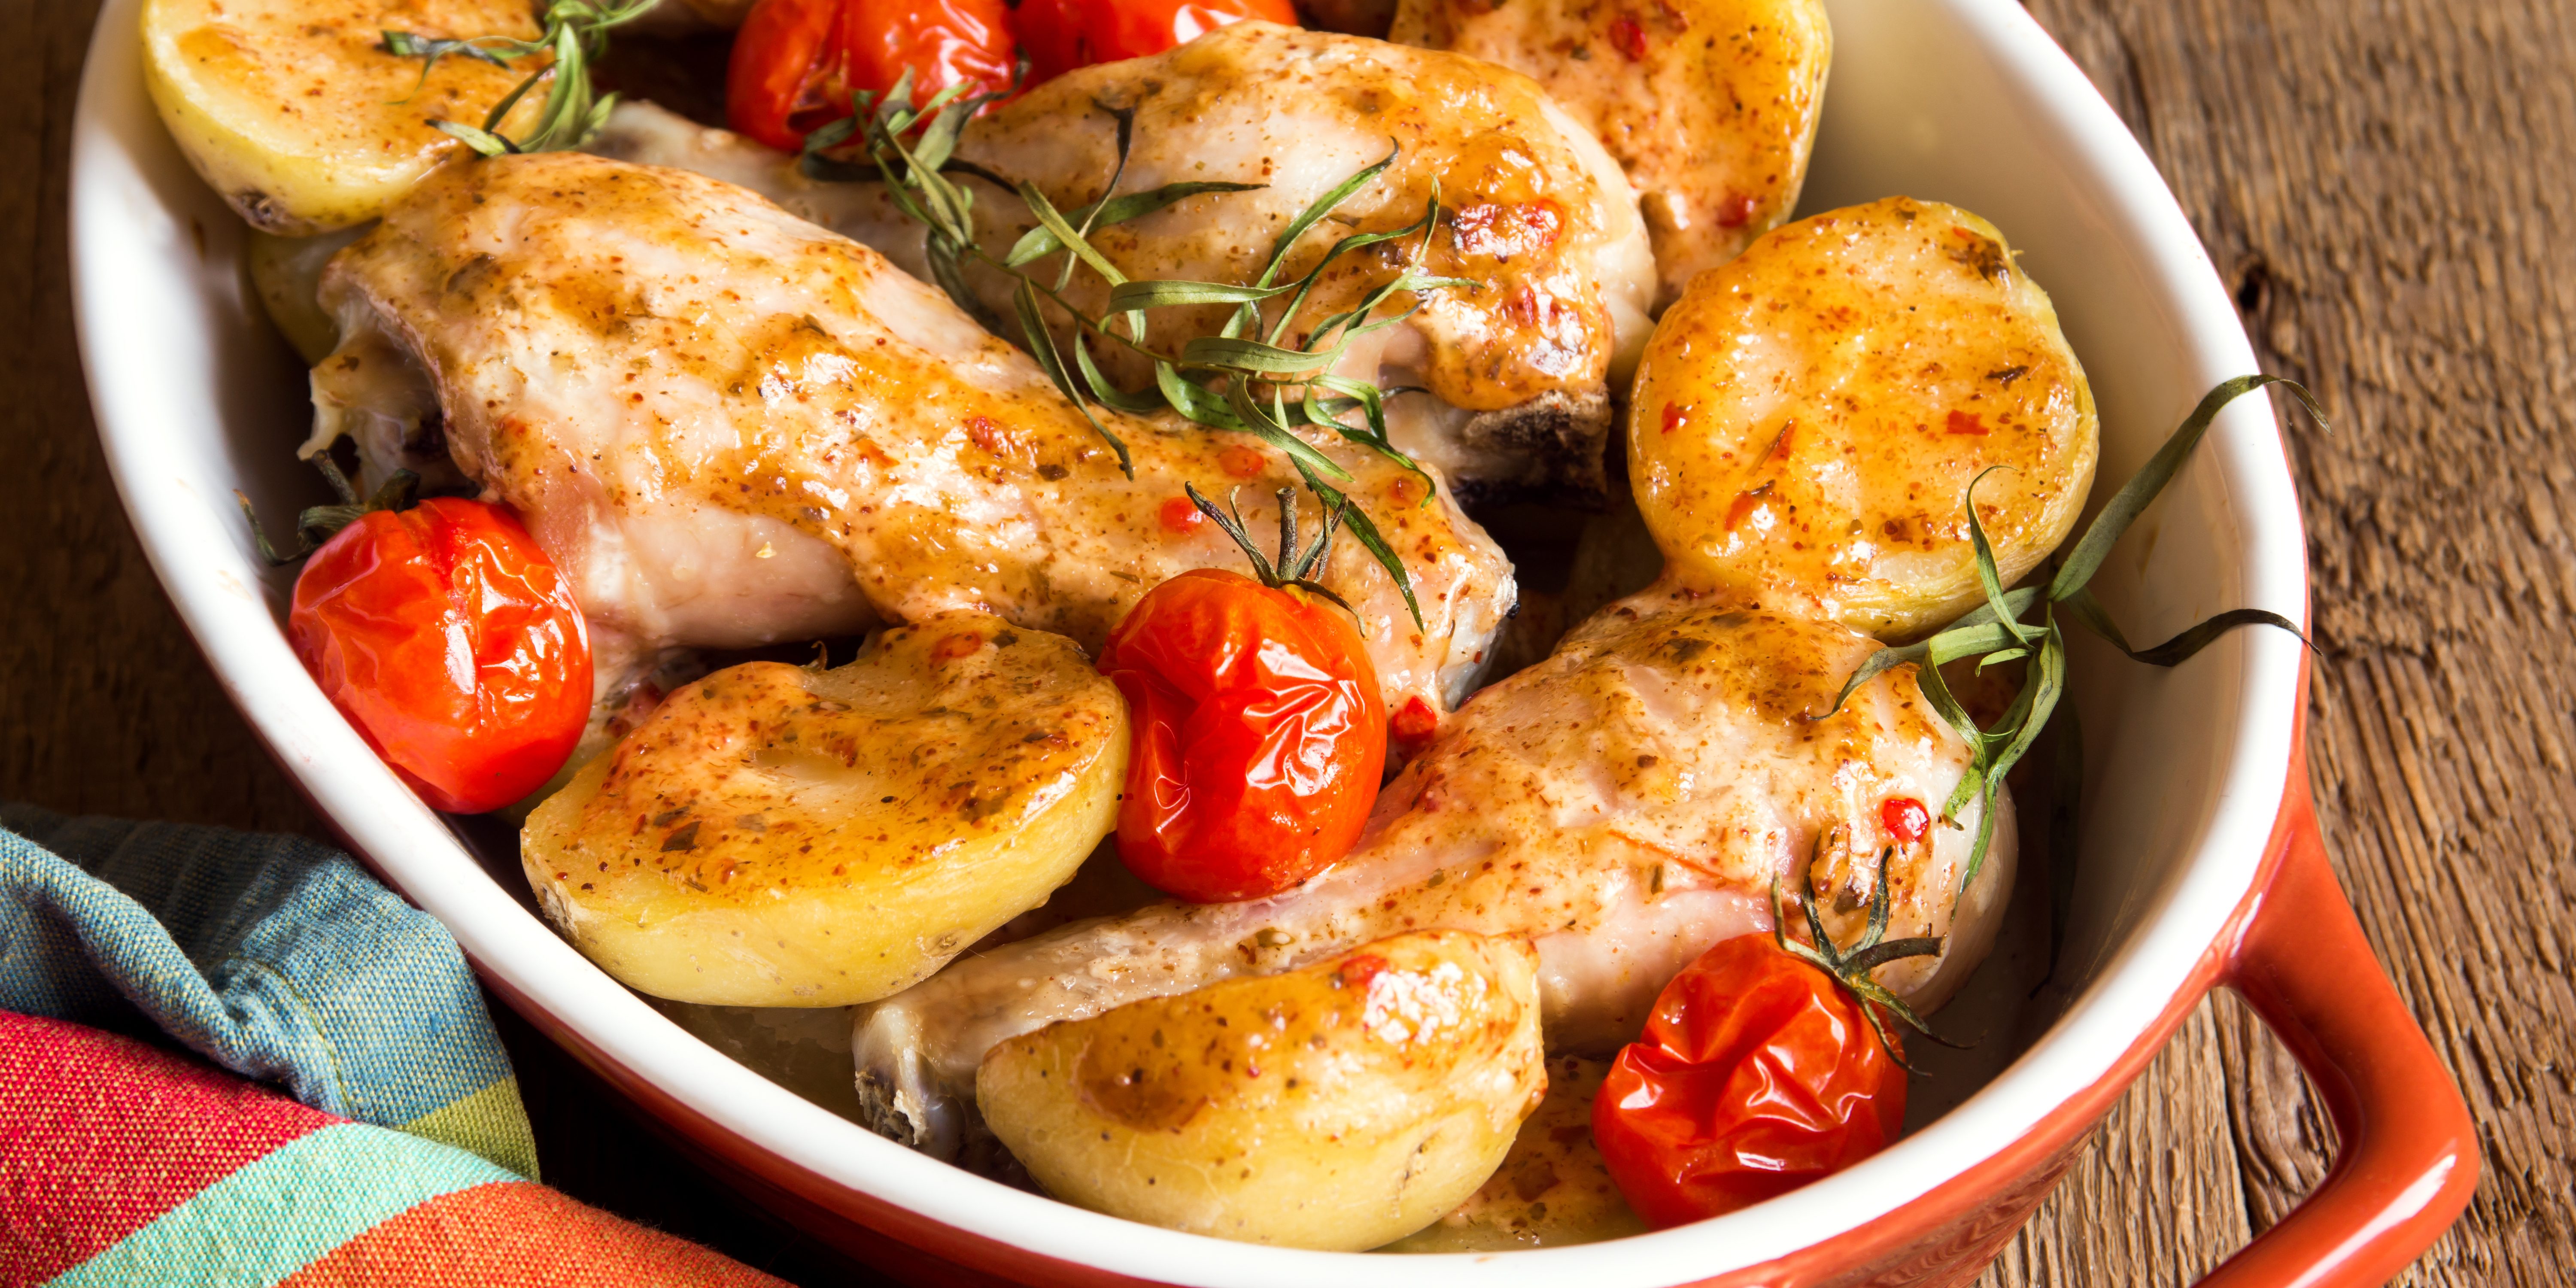 Курица с картошкой и луком, запеченная в духовке